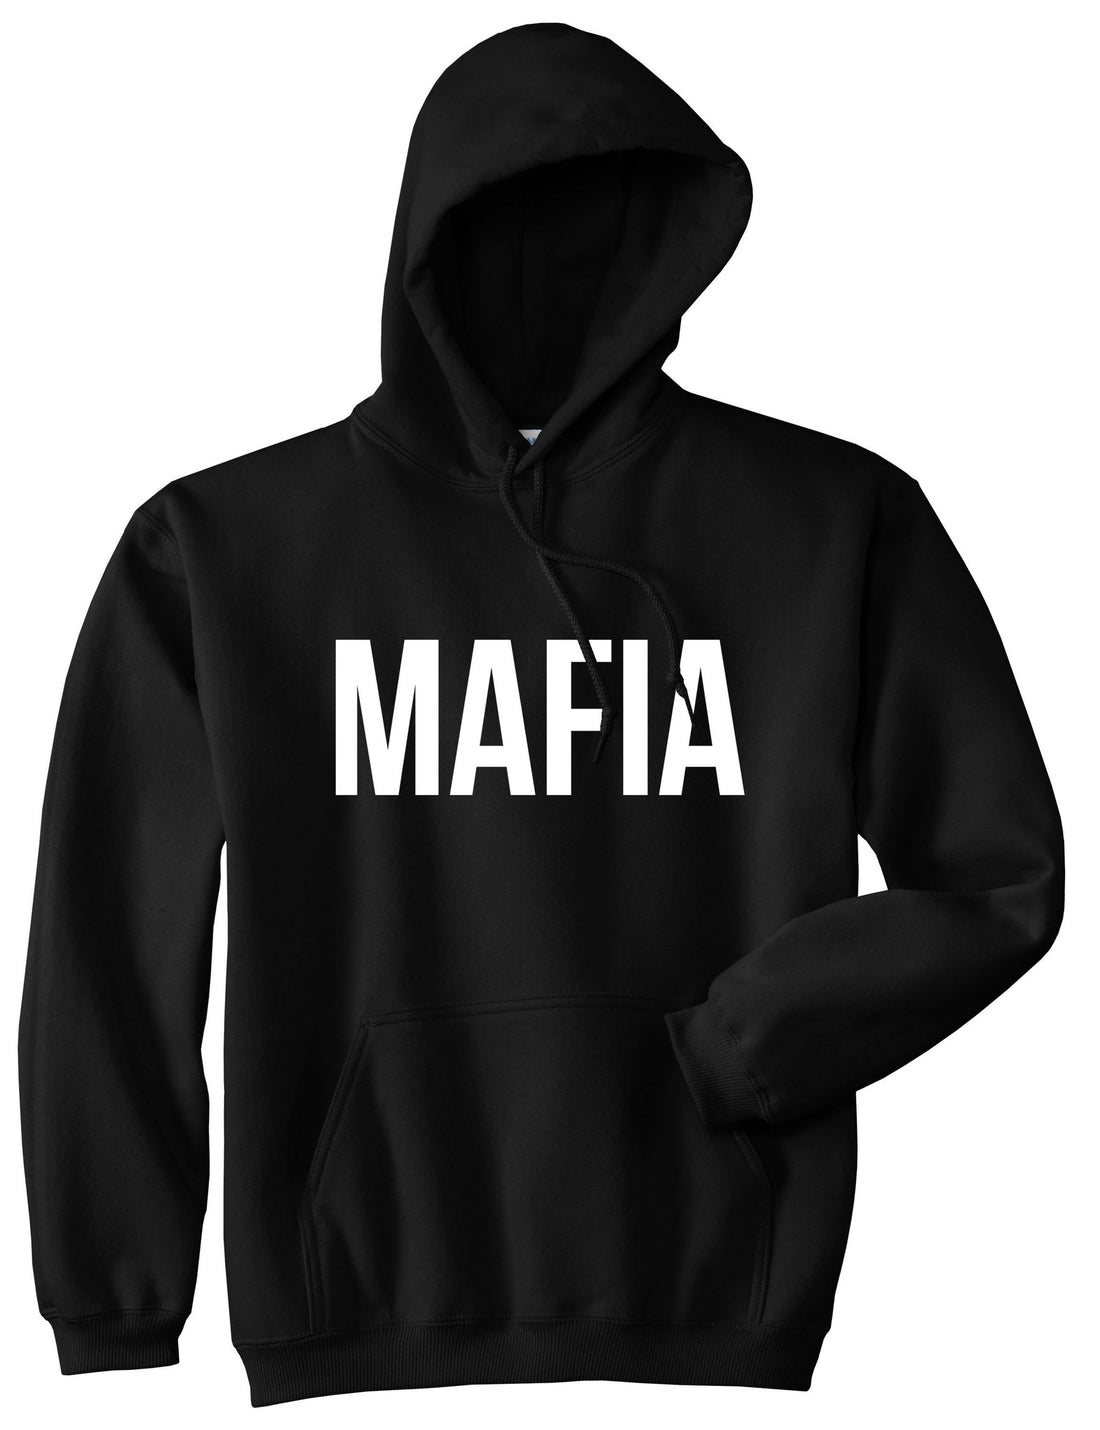 Mafia Junior Italian Mob  Boys Kids Pullover Hoodie Hoody in Black By Kings Of NY